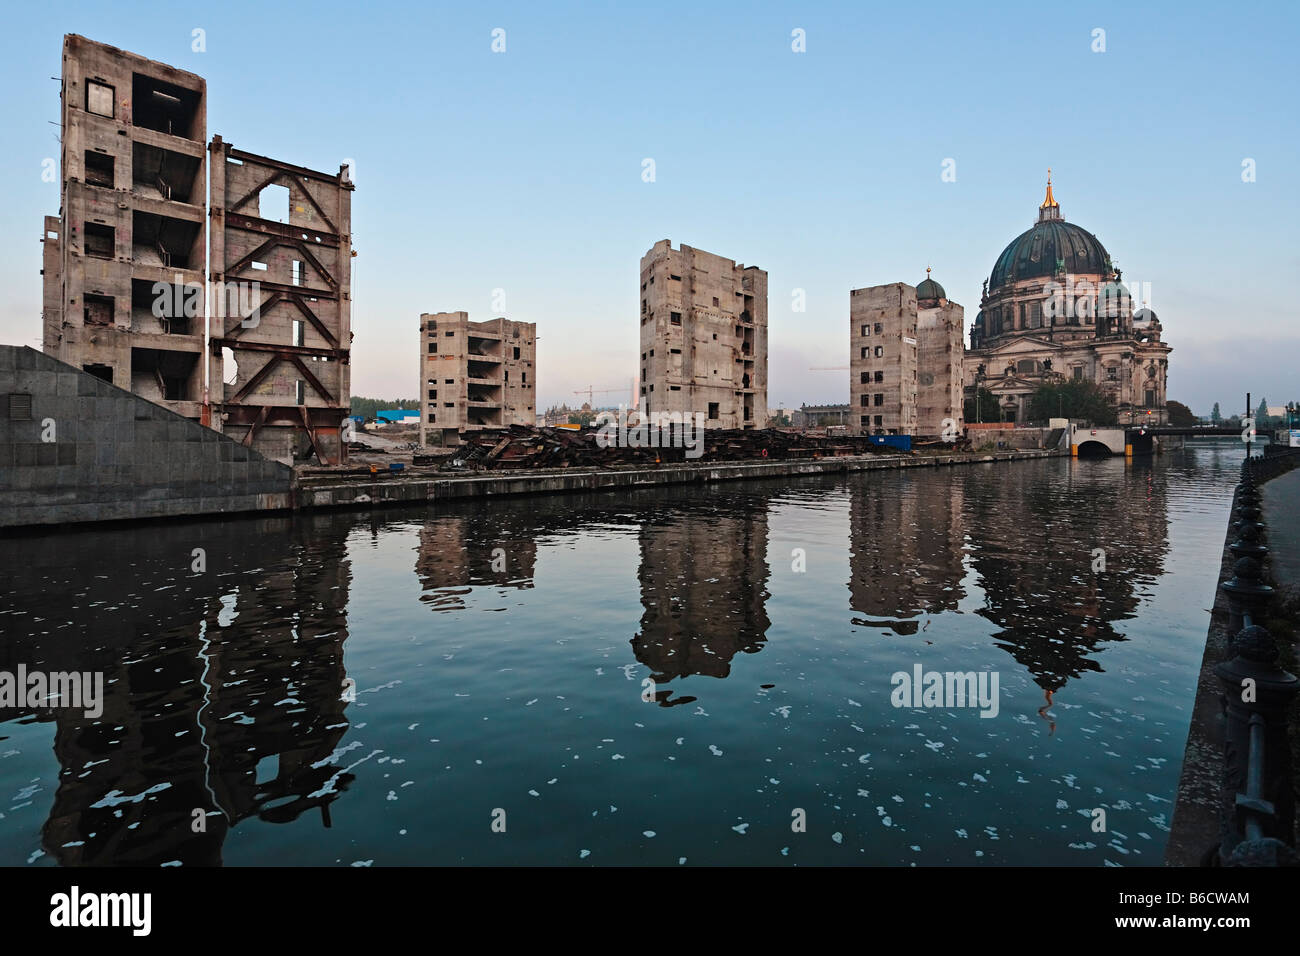 La réflexion des bâtiments dans l'eau, de la rivière Spree, Palast der Republik, Berlin, Allemagne Banque D'Images